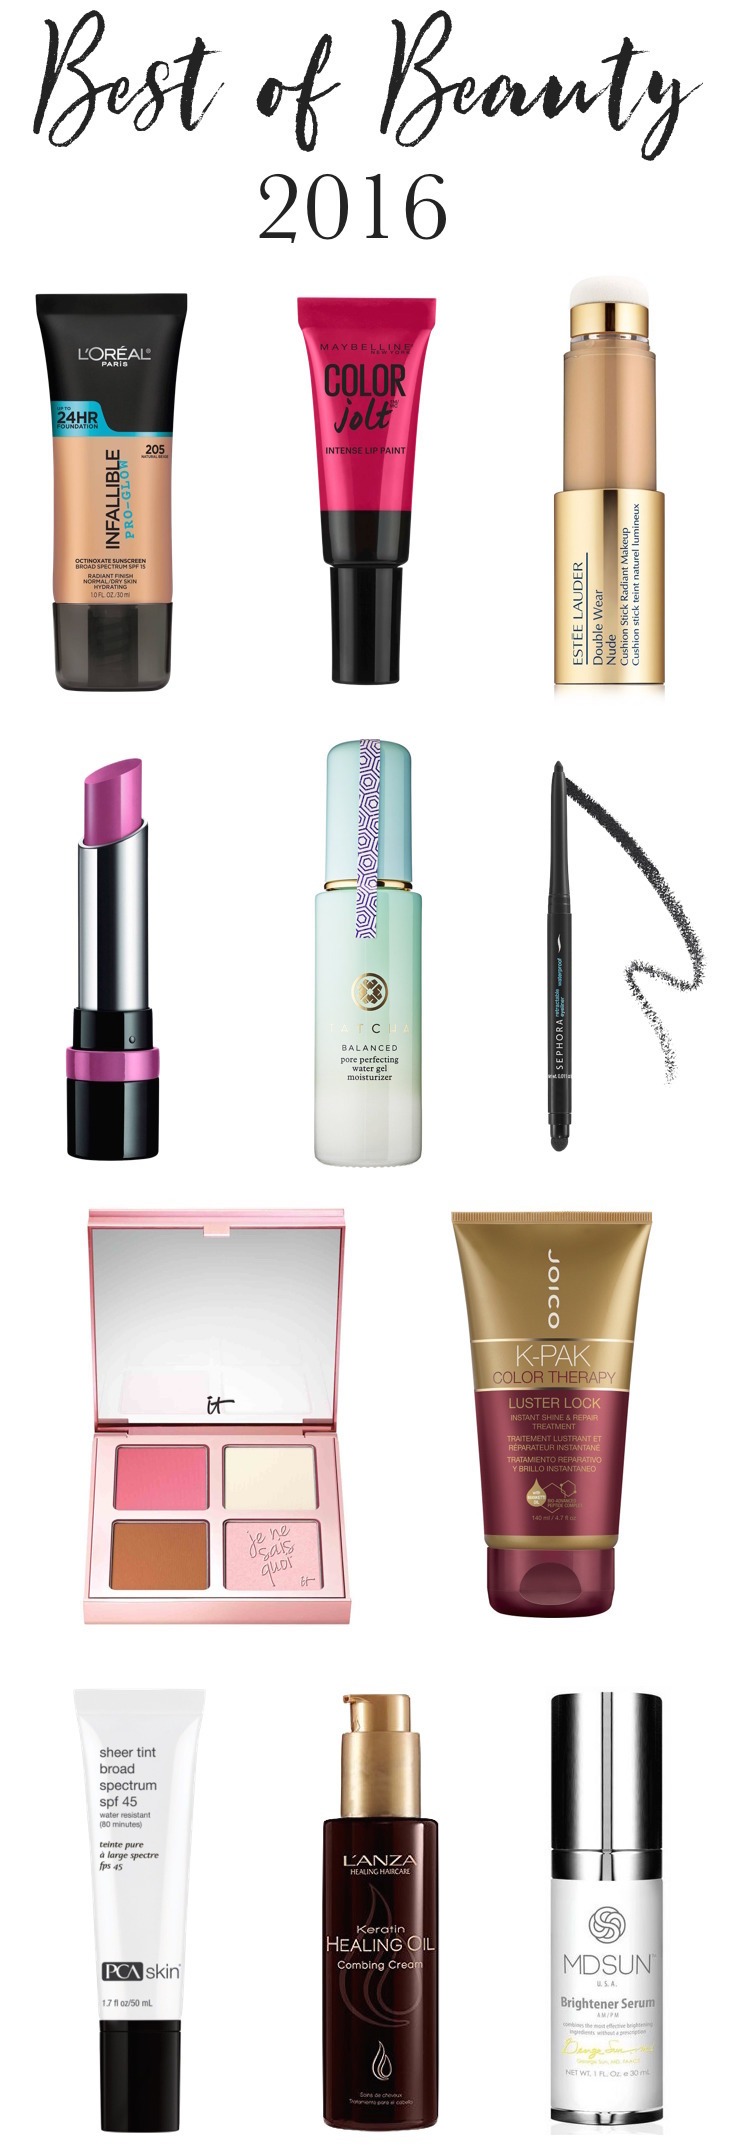 Best Beauty Products 2016 | Best Makeup 2016 | Best Foundation | Best Face Makeup | Best Skincare 2016